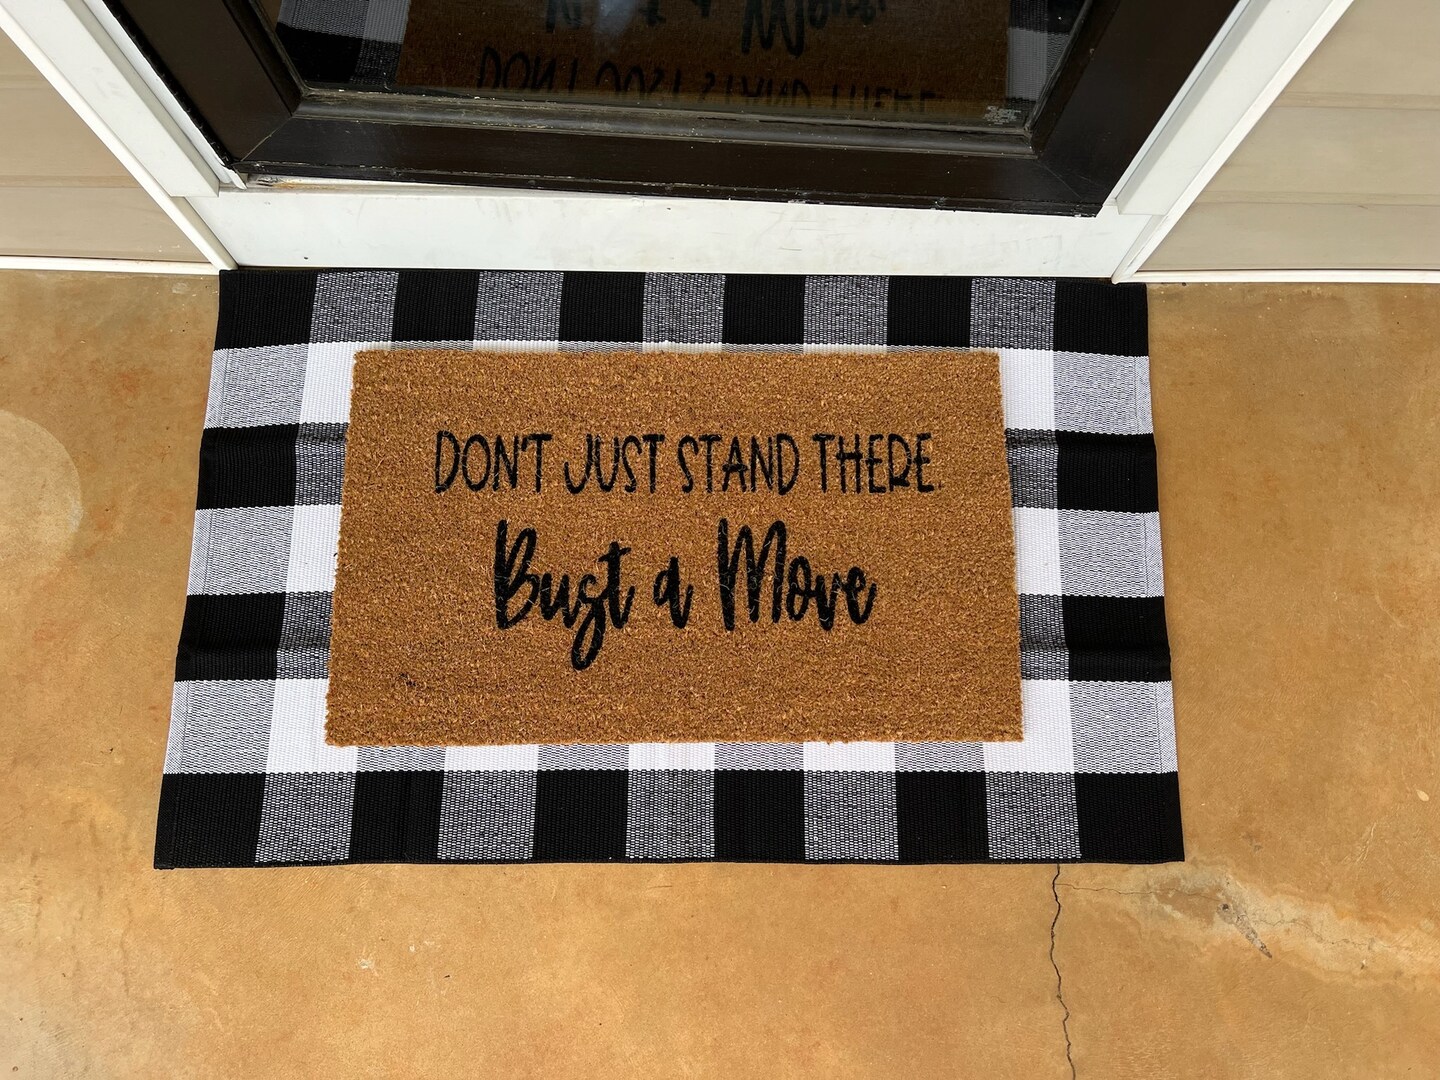 Shut the Front Door Funny Doormat, Outdoor Doormat